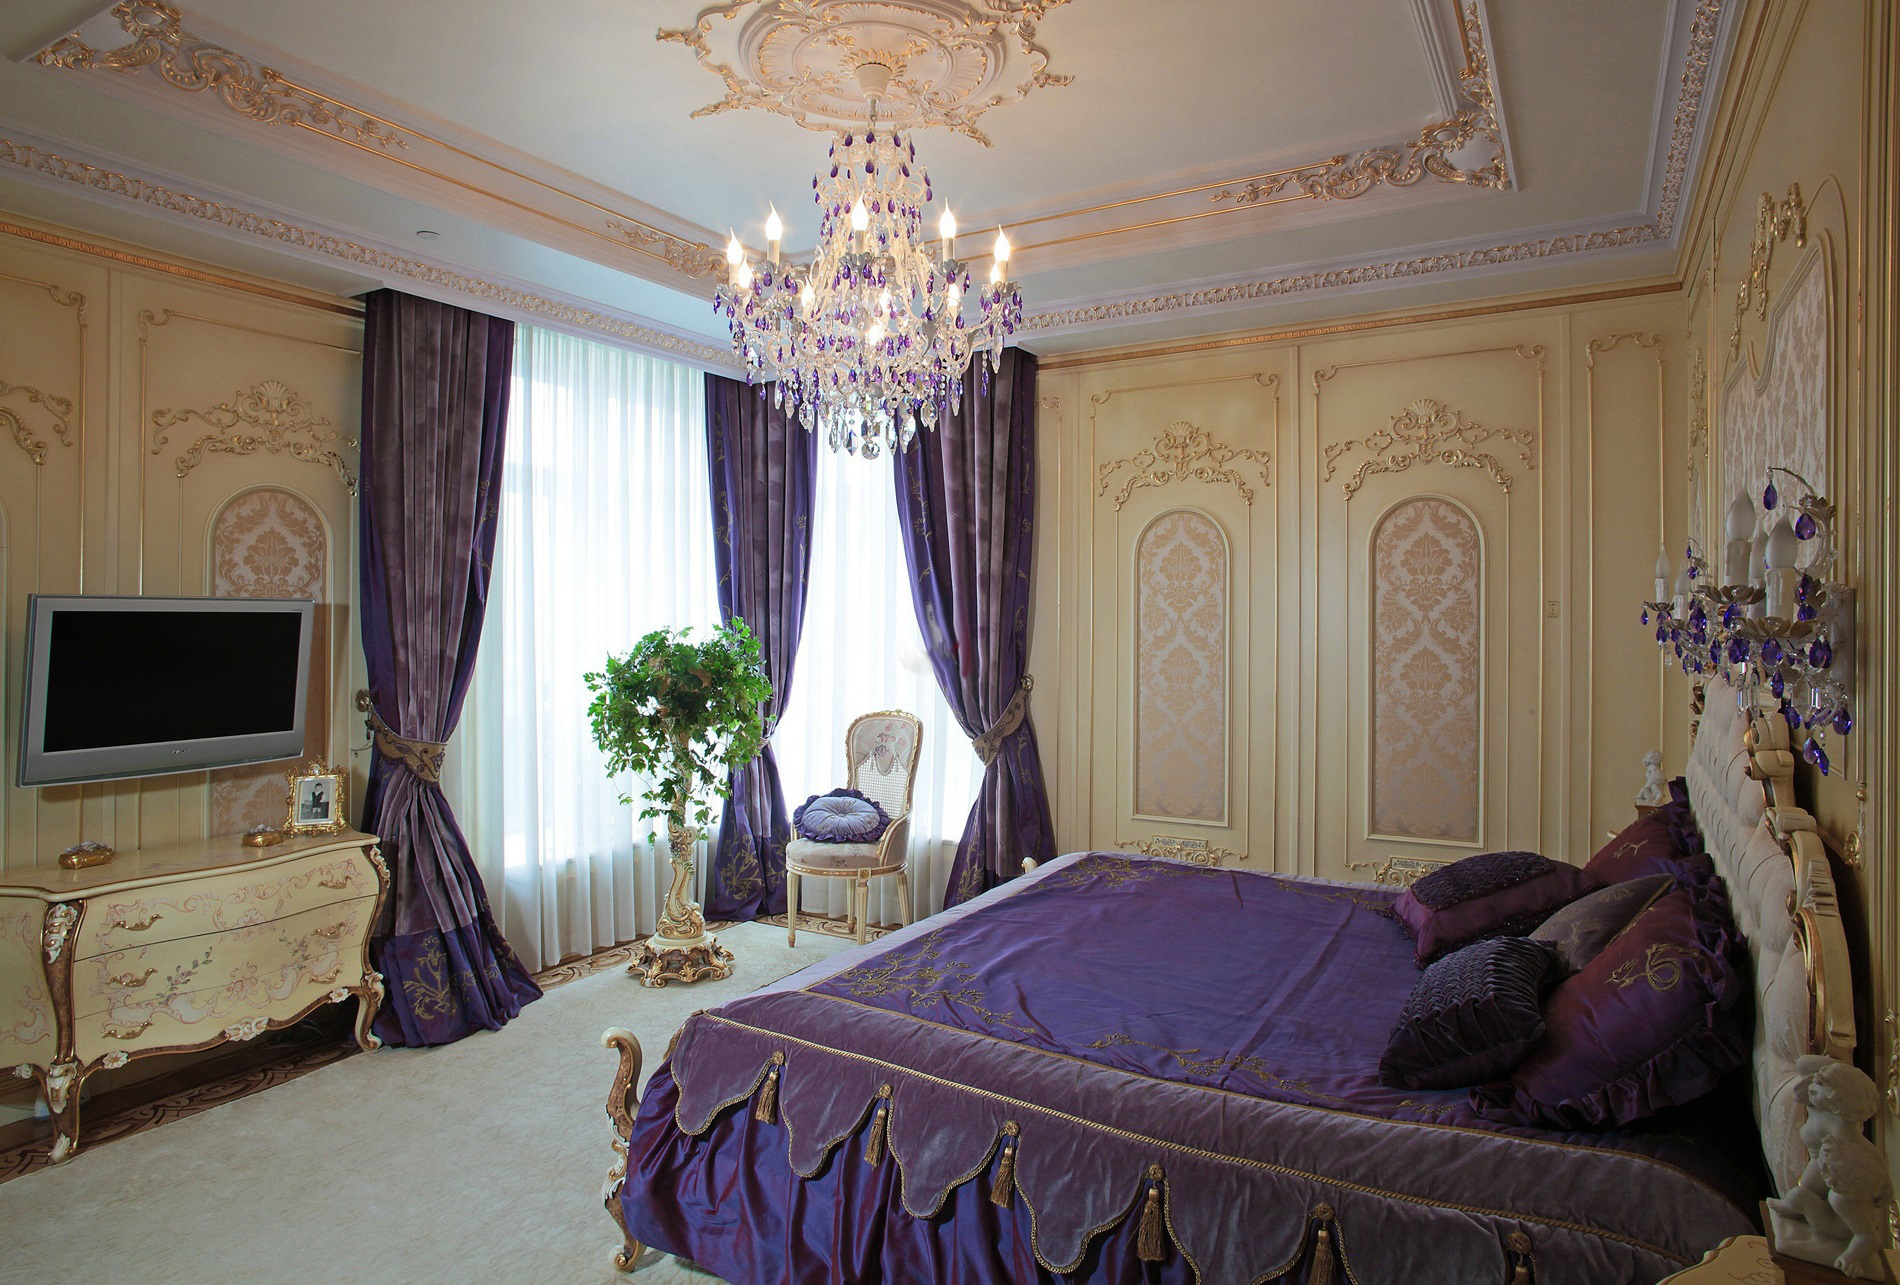 Стильная спальная комната в стиле барокко. Тонкий дизайнерский замысел - темно-фиолетовые шторы сочетаются с постельными принадлежностями, подобранными в тон.